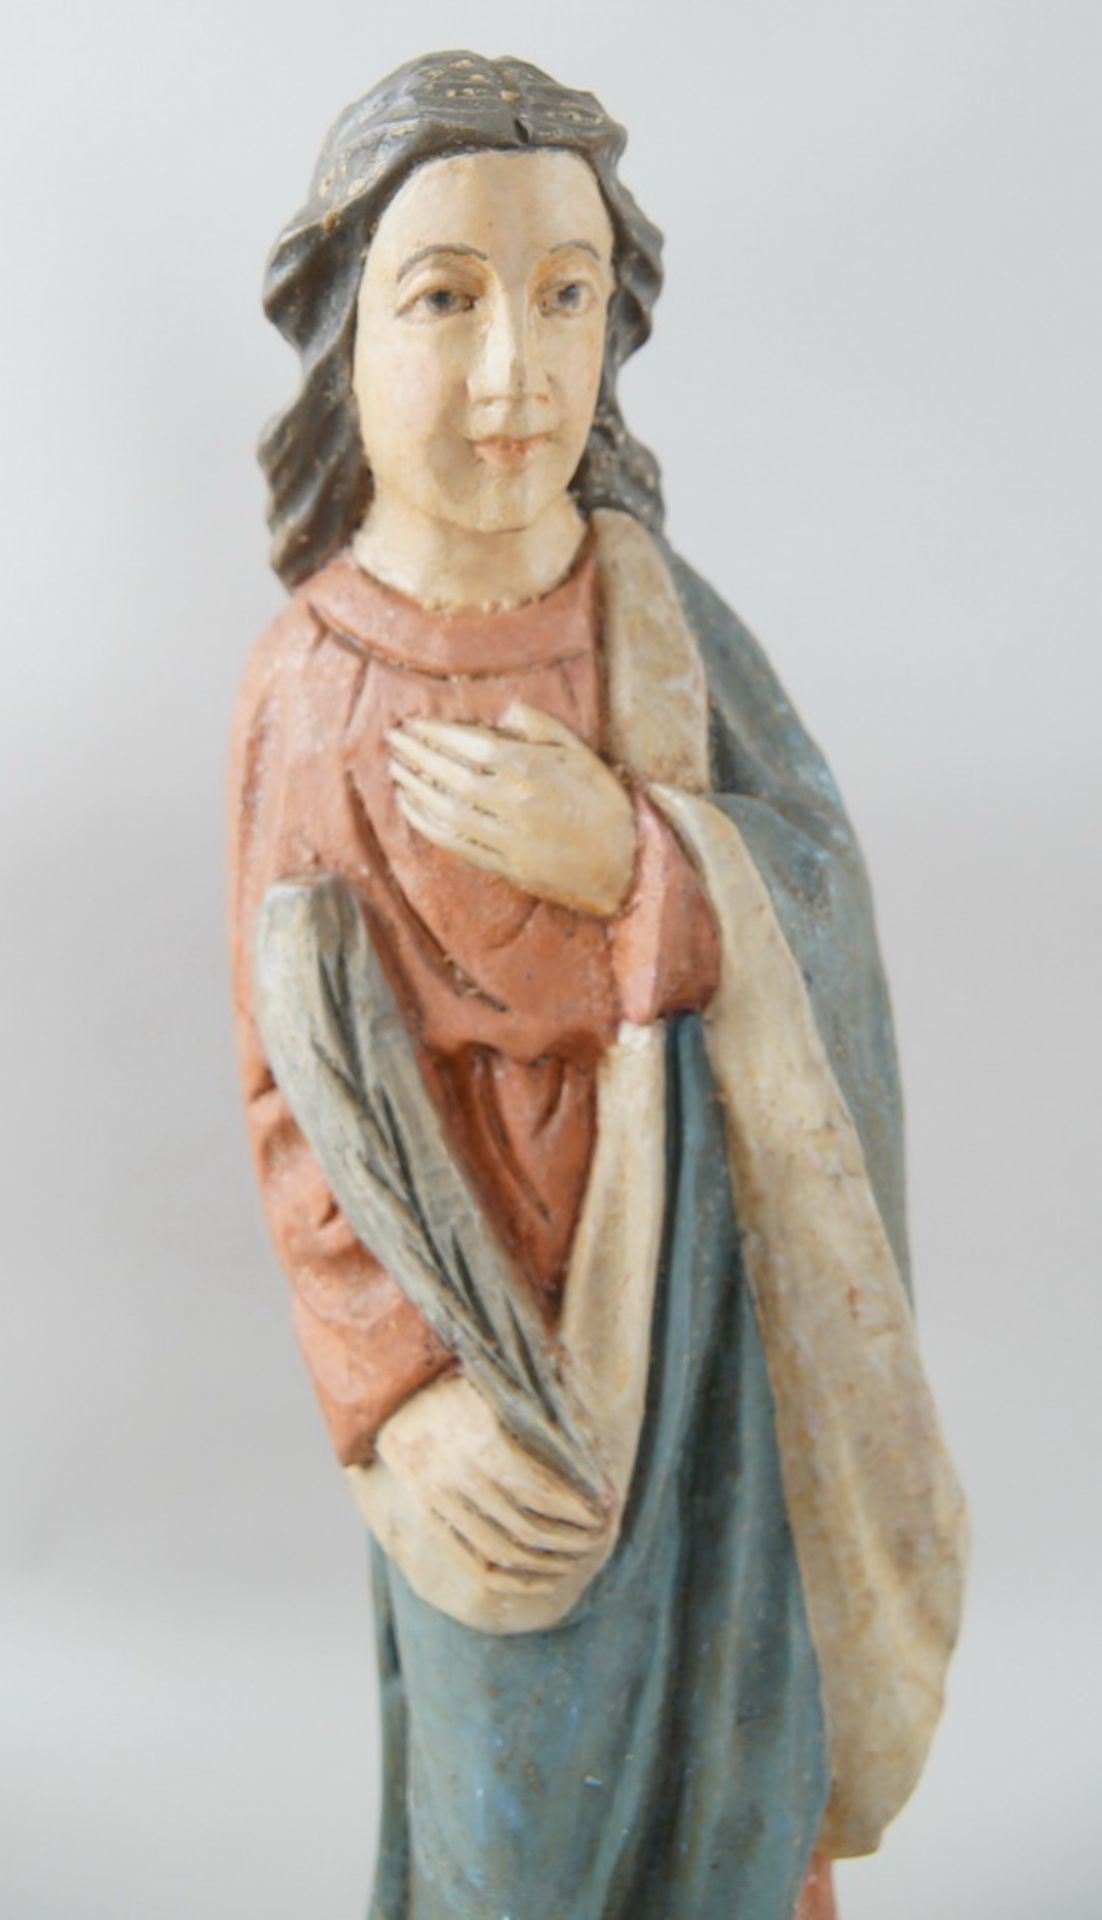 Heiligenskulptur mit Feder in der Hand, Holz geschnitzt und gefasst, H 60 cm - Bild 2 aus 7